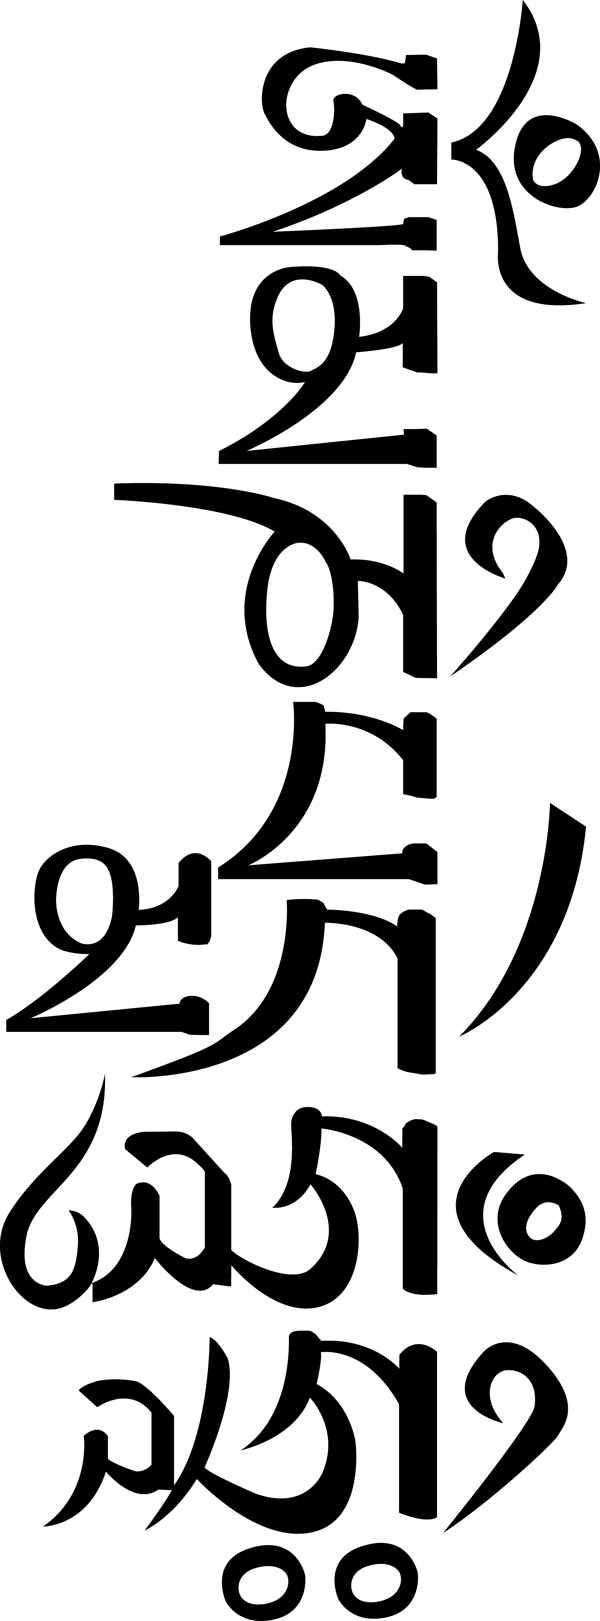 藏文六字箴言